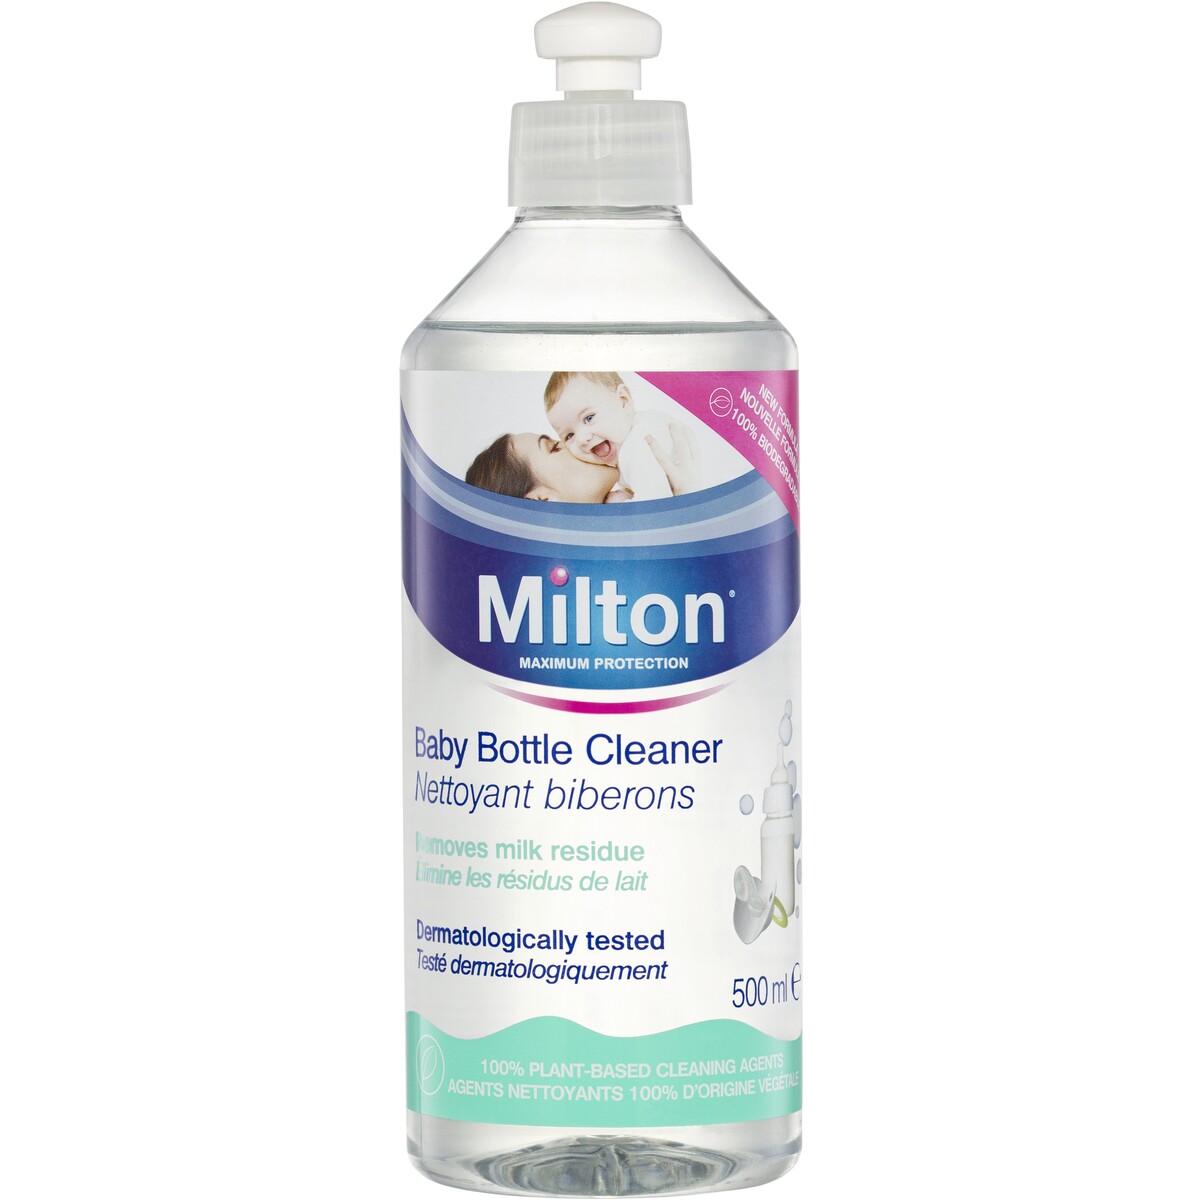 Milton bottle cleaner